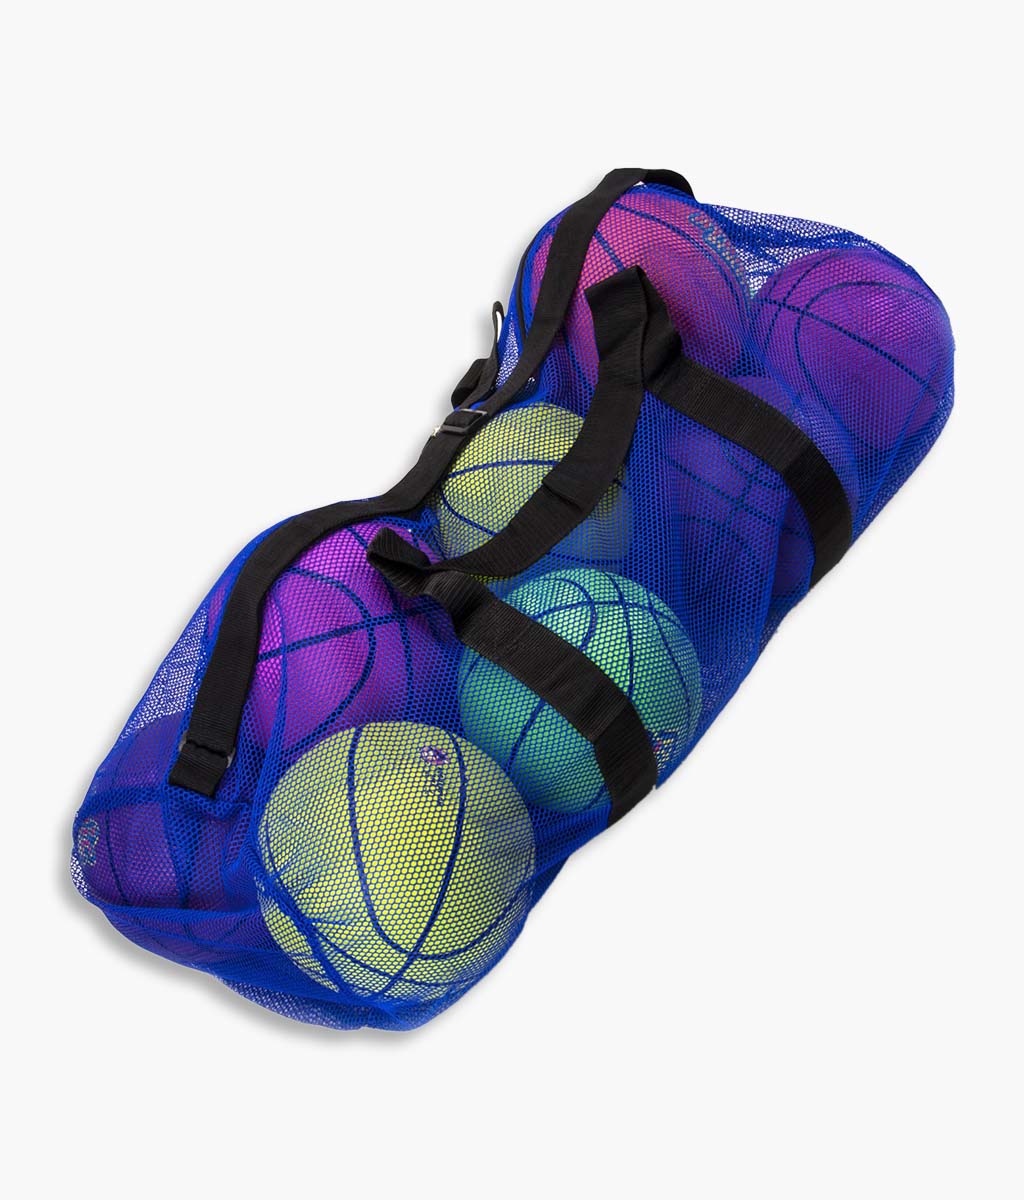 Mesh Sports Ball Bag with Adjustable Shoulder Strap